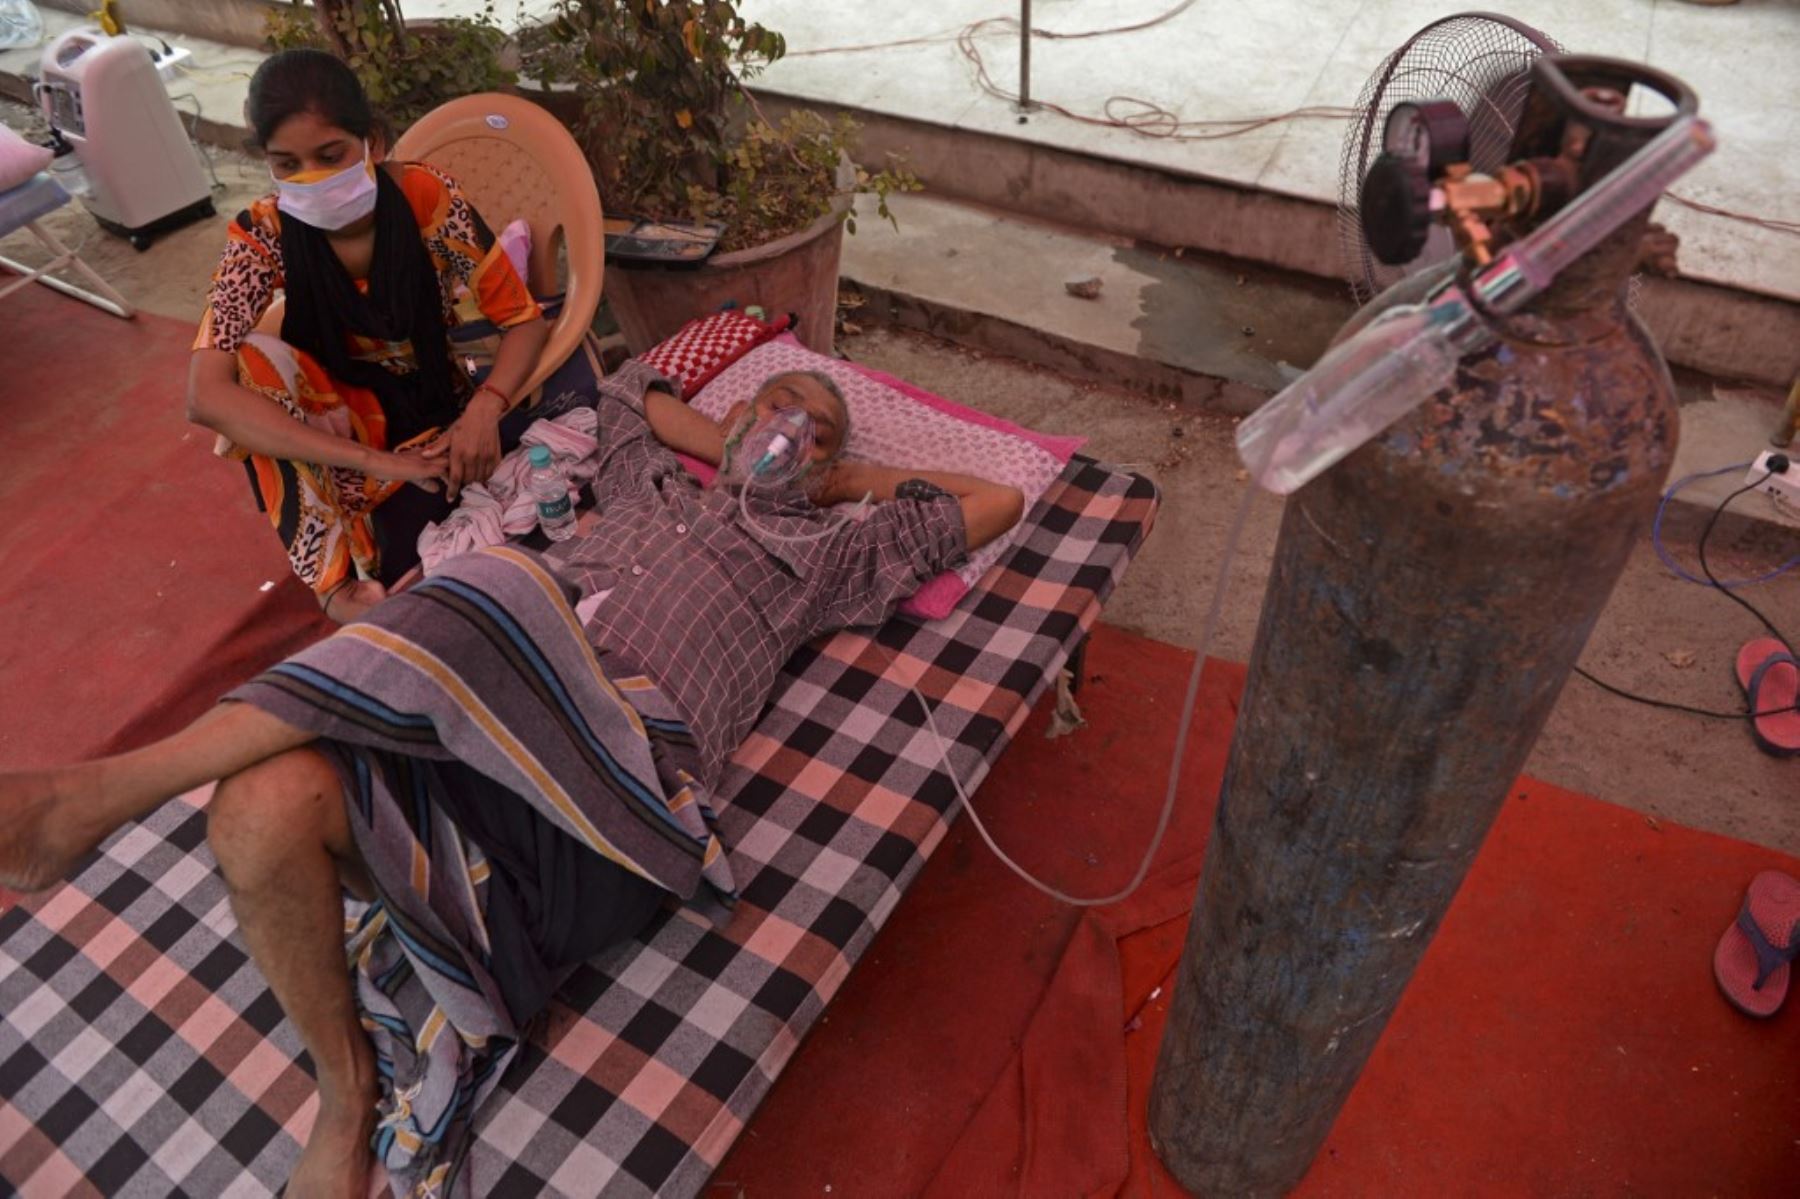 Un paciente respira con la ayuda de oxígeno provisto por un Gurudwara, un lugar de culto para los sijs, debajo de una carpa instalada a lo largo de la carretera en medio de la pandemia del coronavirus covid-19 en las afueras de Nueva Delhi. Foto: AFP